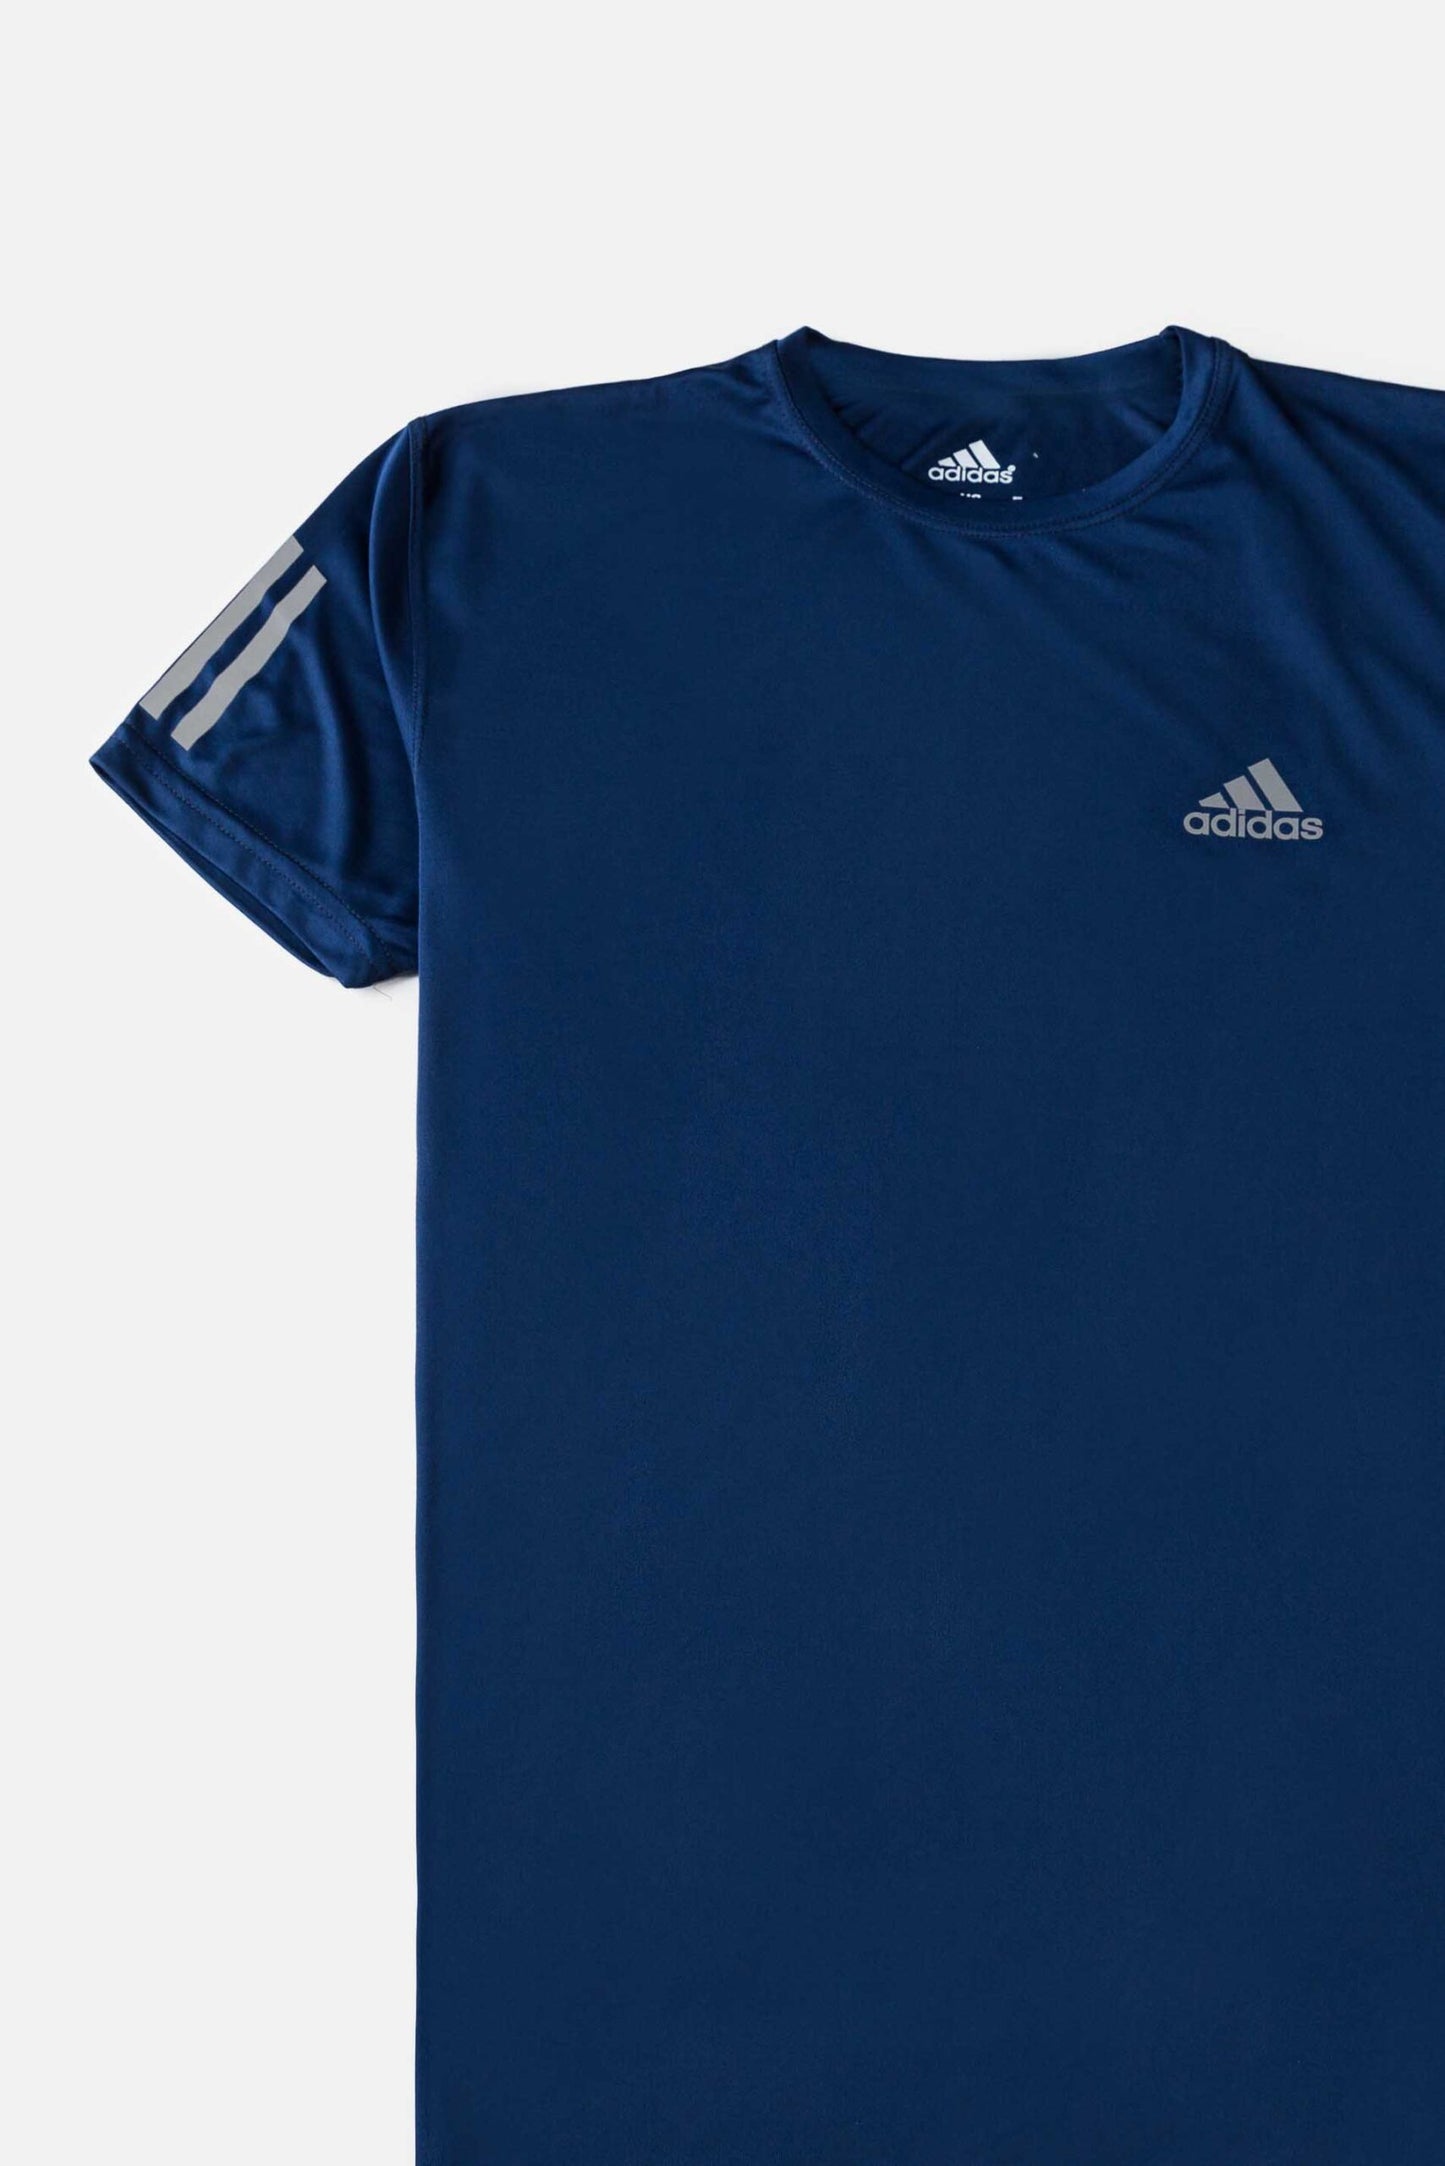 Premium Quality Dri-FIT Adidas T Shirt Navy Blue